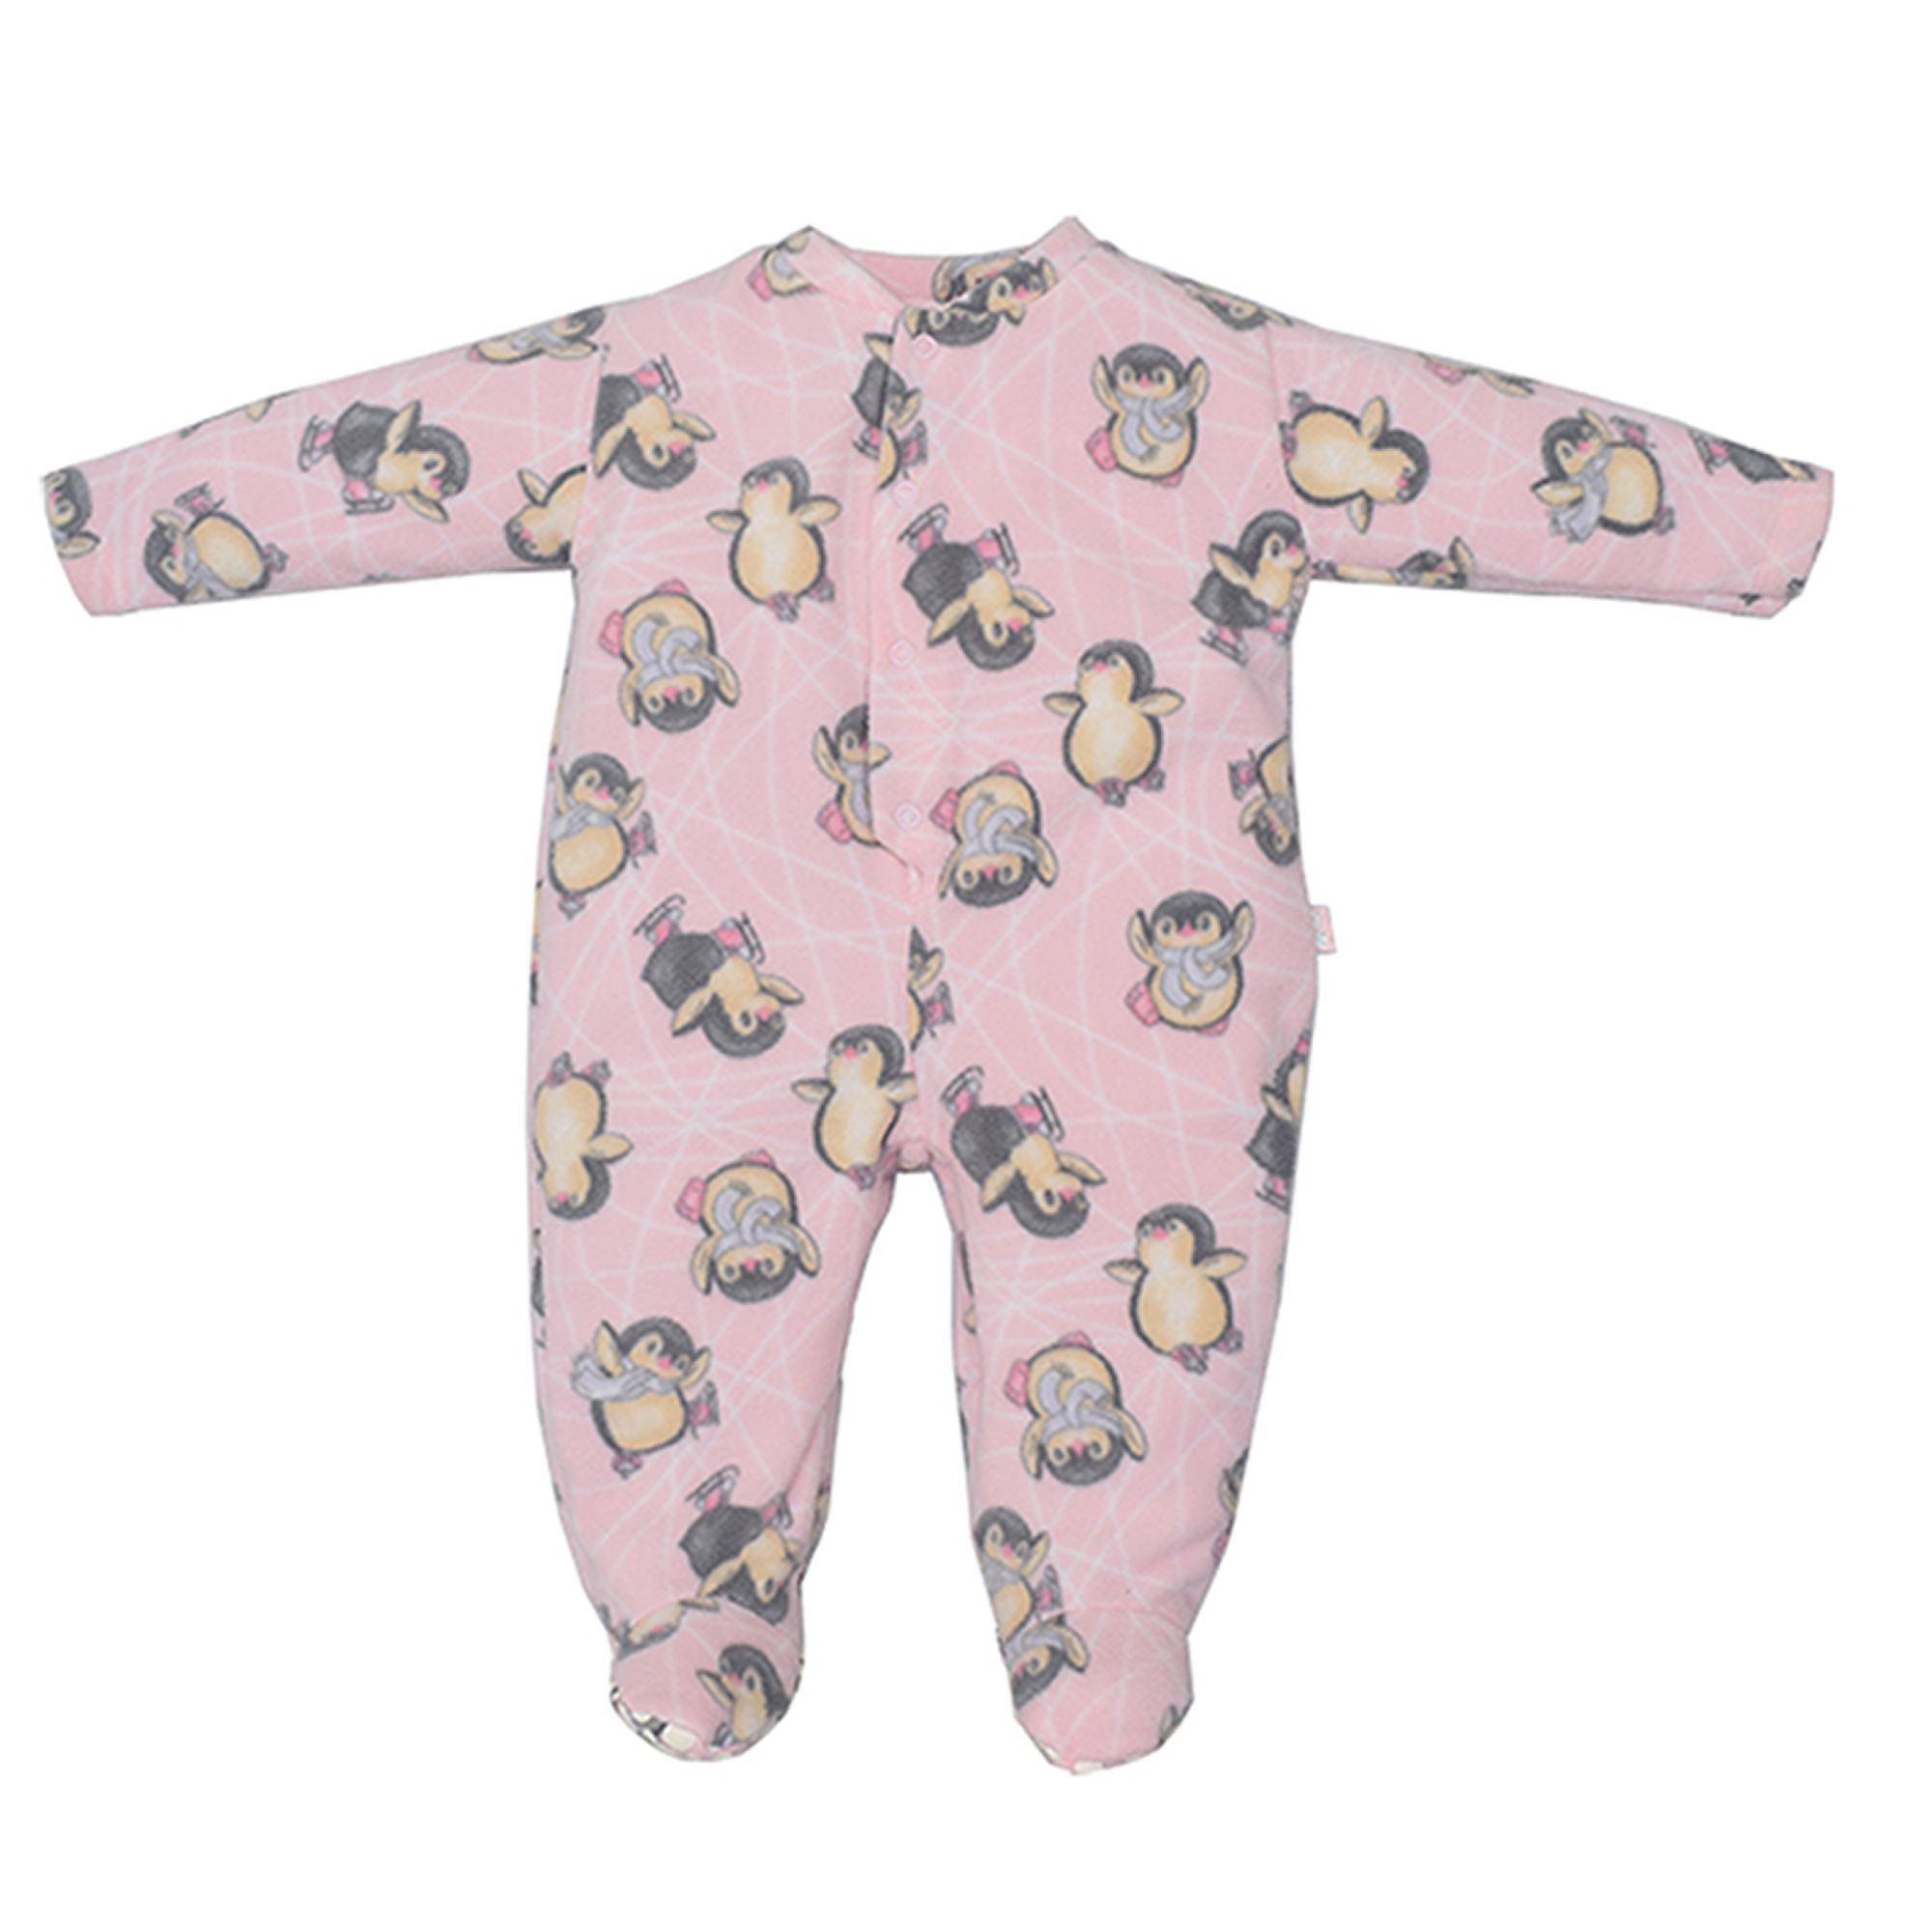 pijama-macacao-onesie-meninas-rosa-pinguins